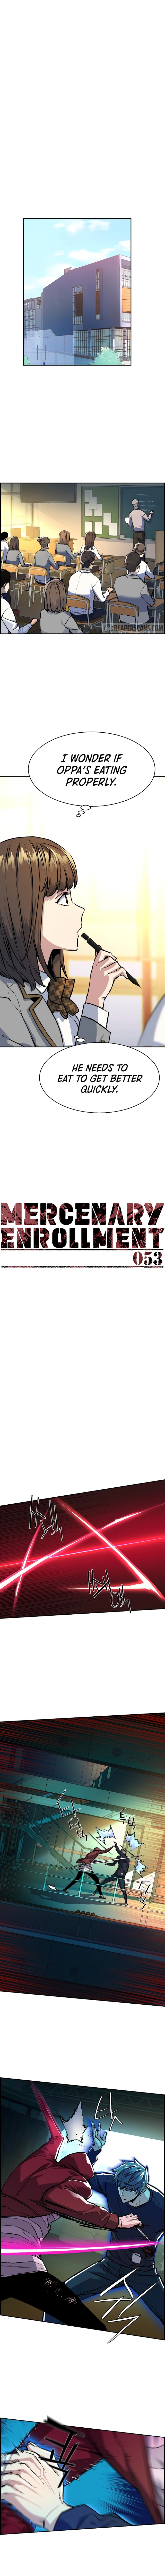 Mercenary Enrollment image